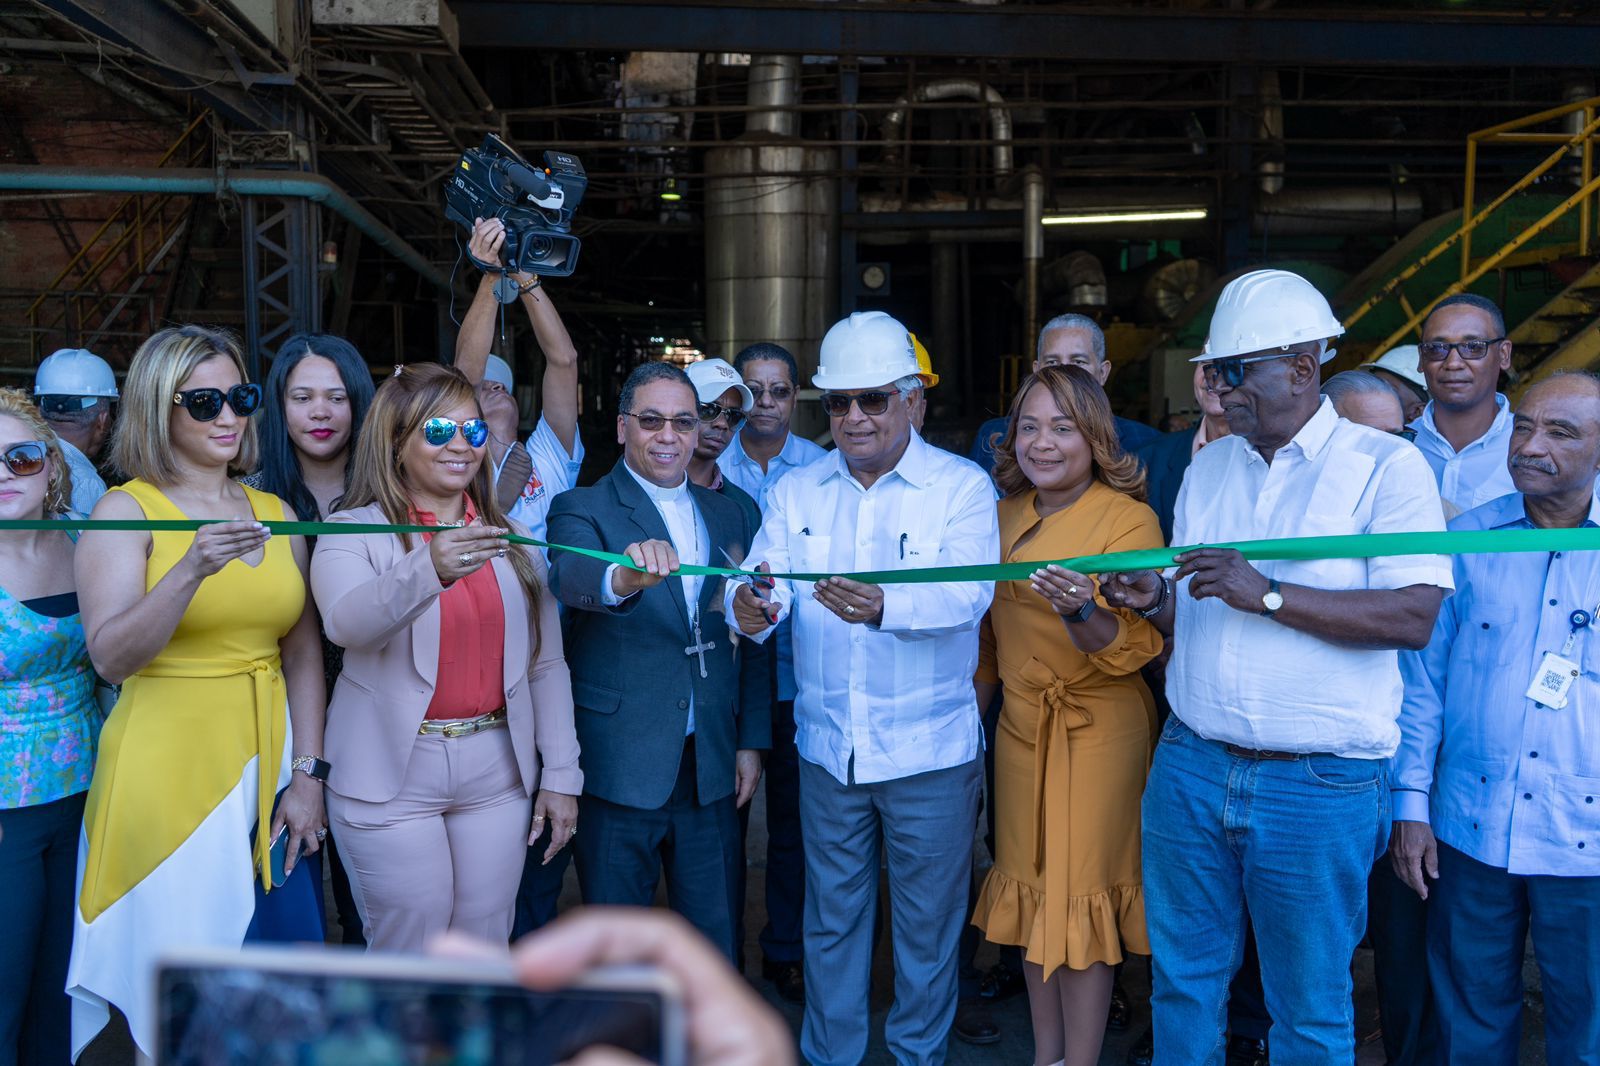 REPÚBLICA DOMINICANA: CEA informa se han invertido más de RD 125 millones en recuperación ingenio Porvenir de San Pedro de Macorís